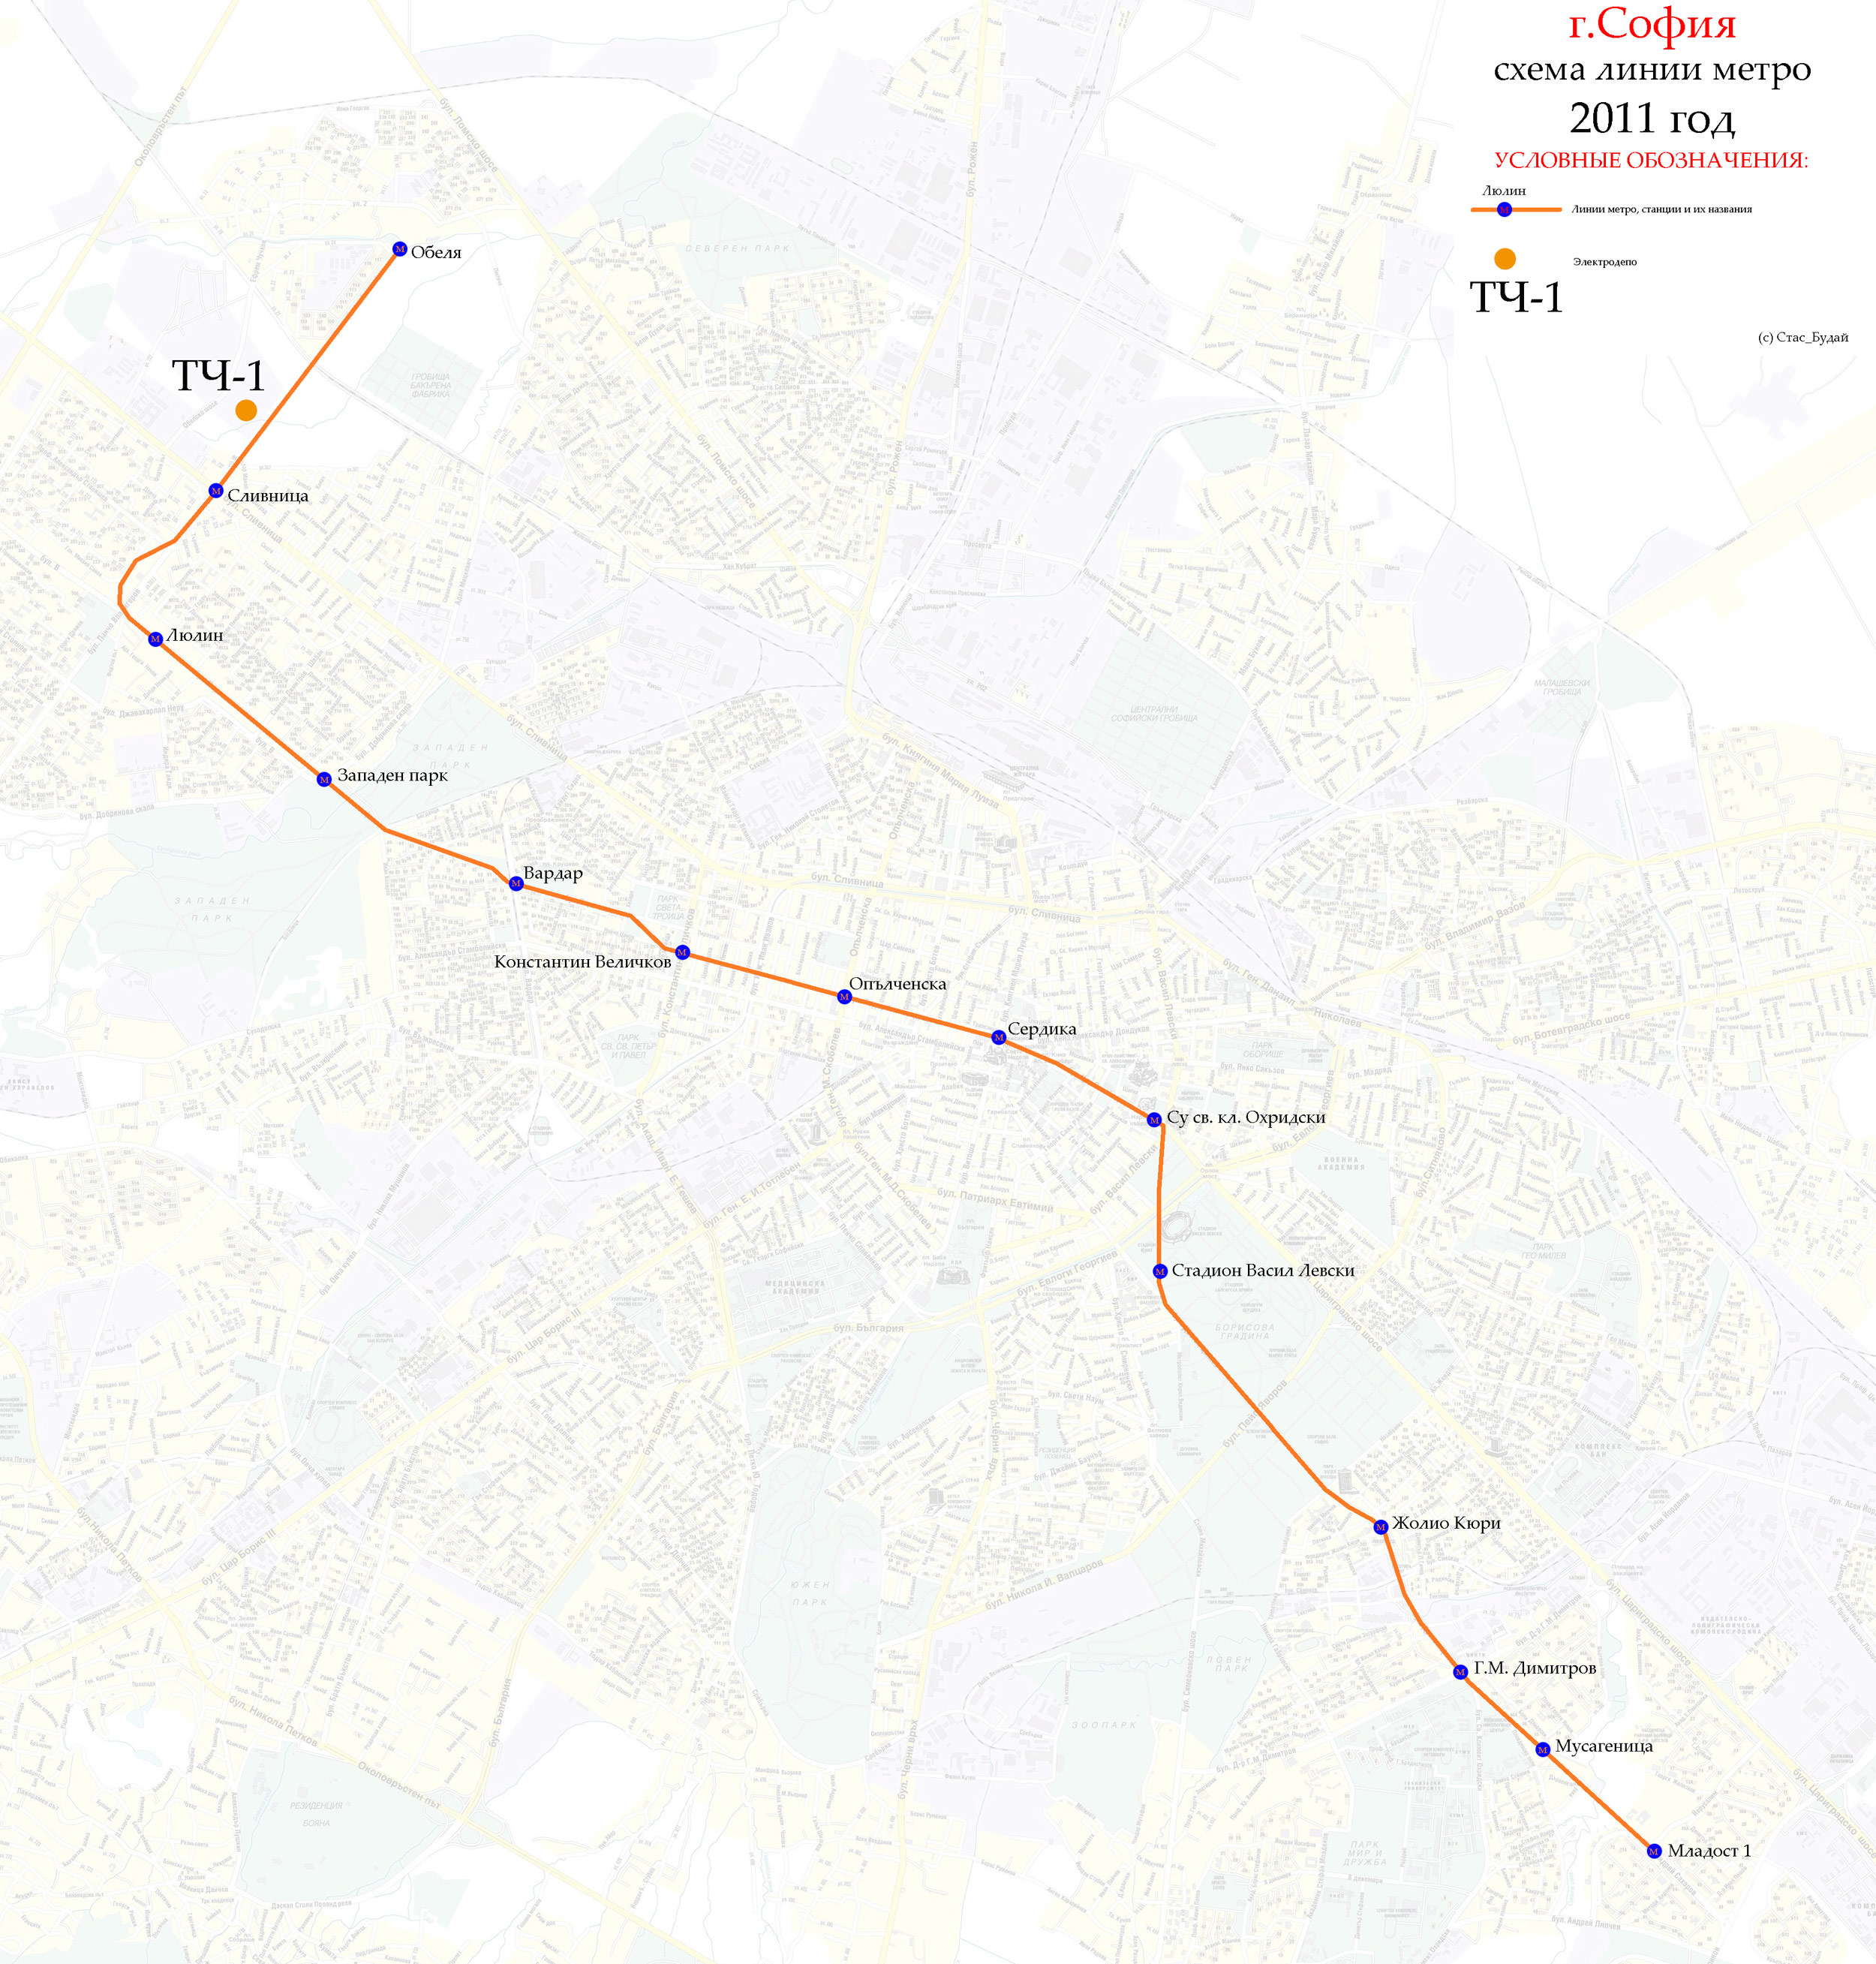 索菲亞 — Maps and diagrams of individual routes in the subway